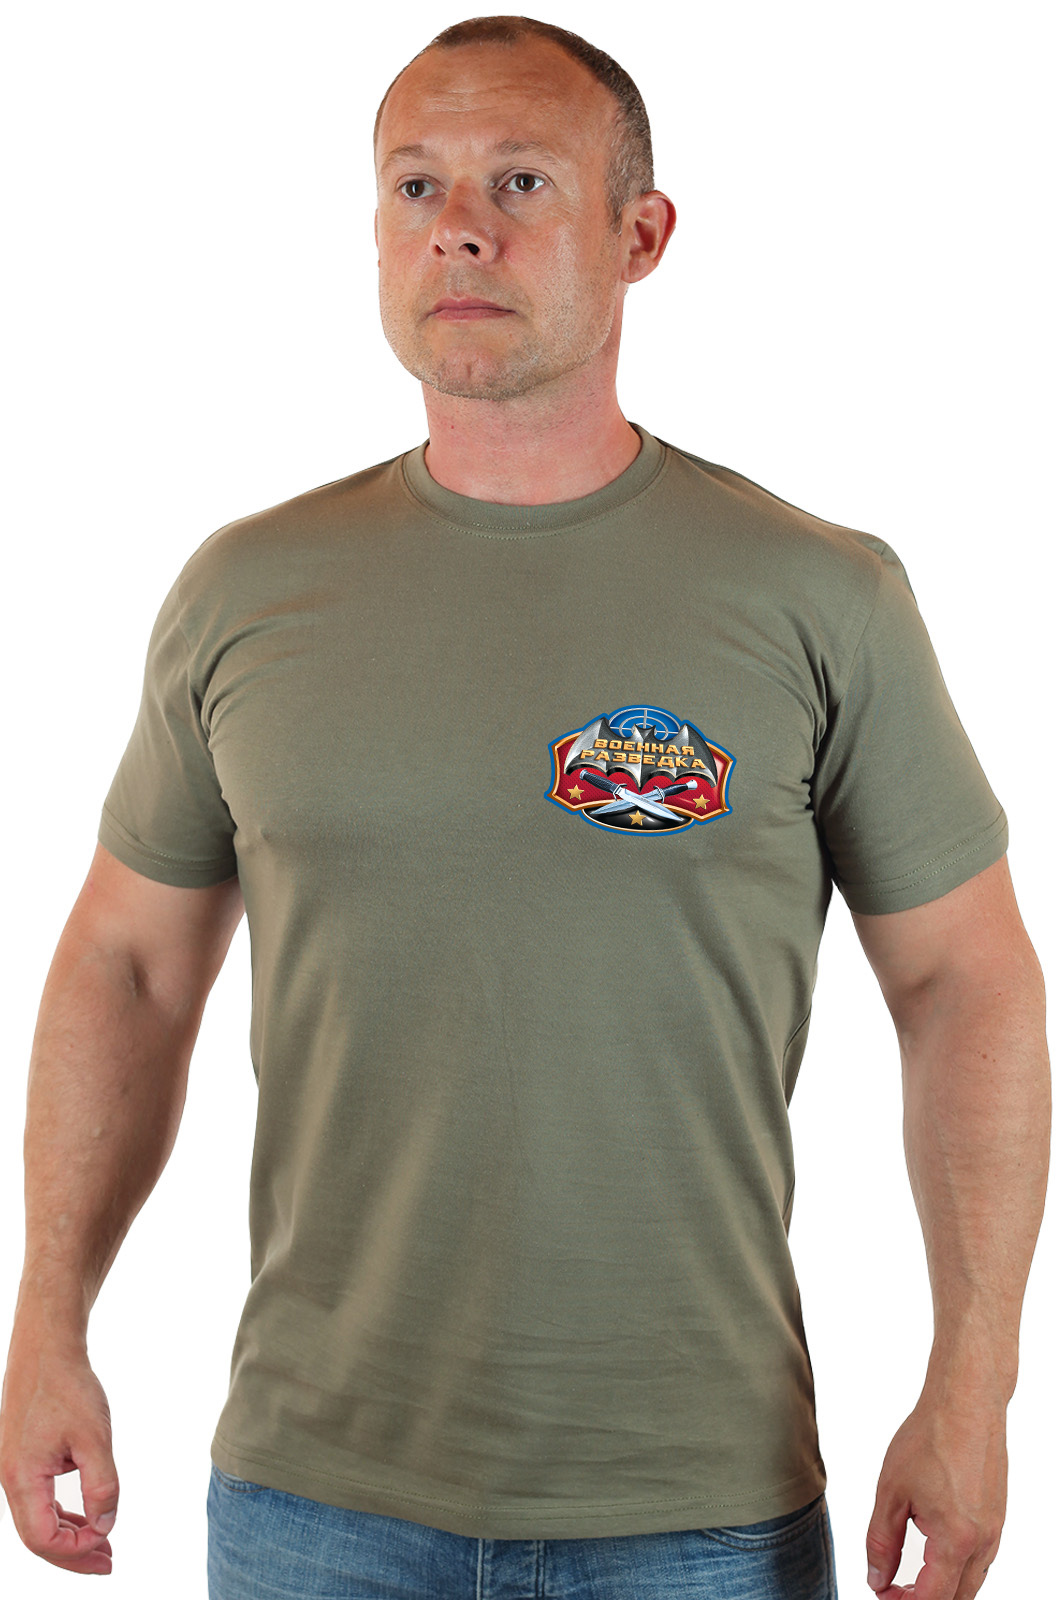 Армейская футболка разведчика с девизом 